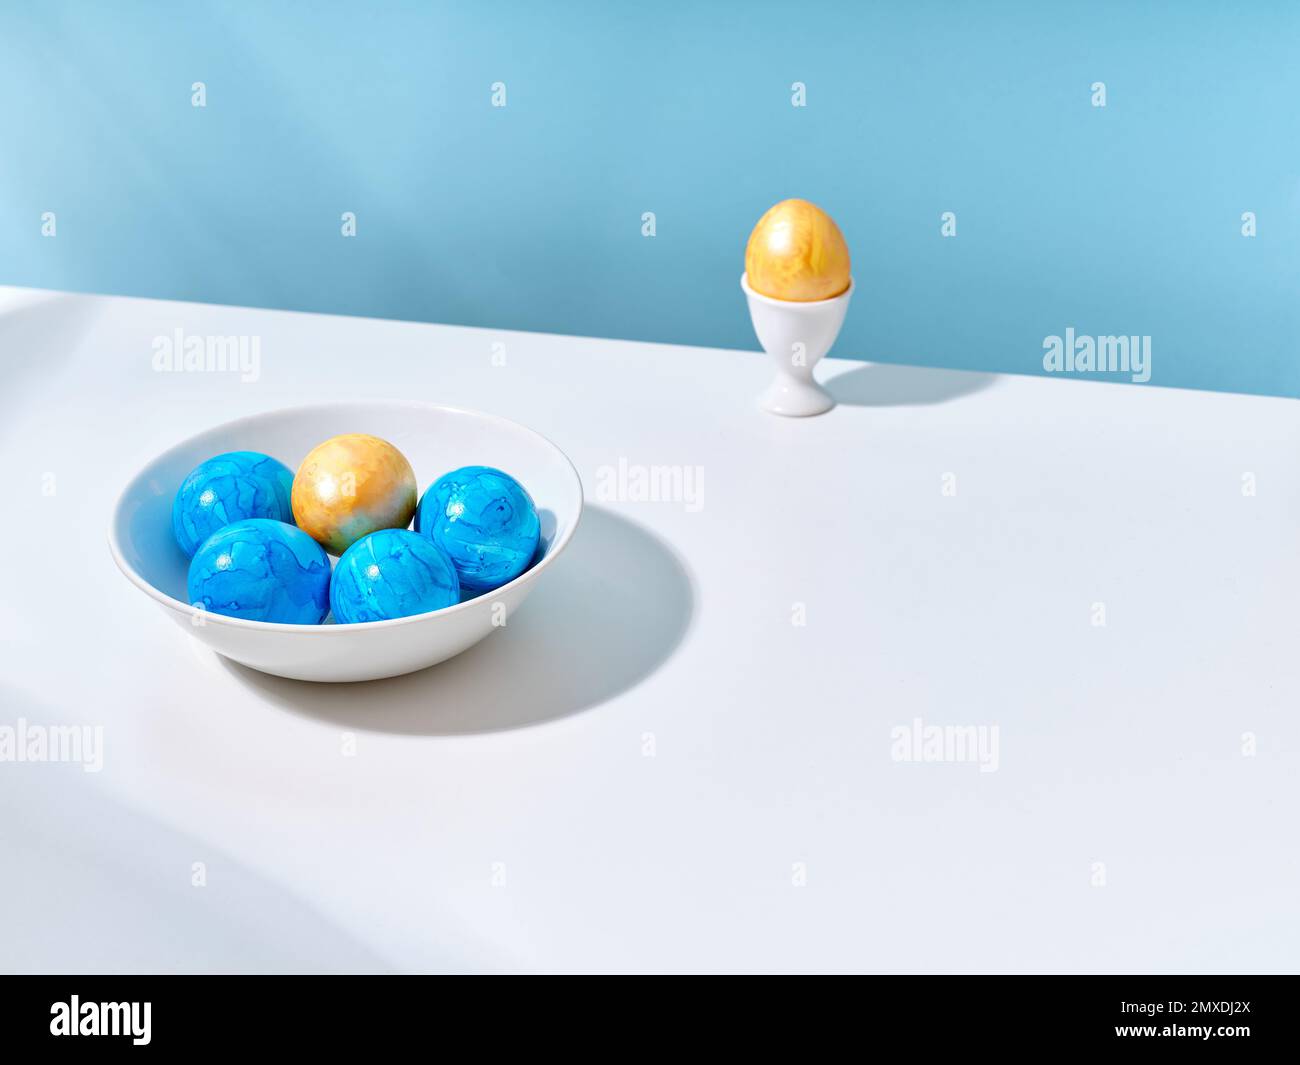 Mise en page créative avec œufs de pâques bleus et dorés sur fond lumineux. Un modèle pour le contenu de fête Banque D'Images